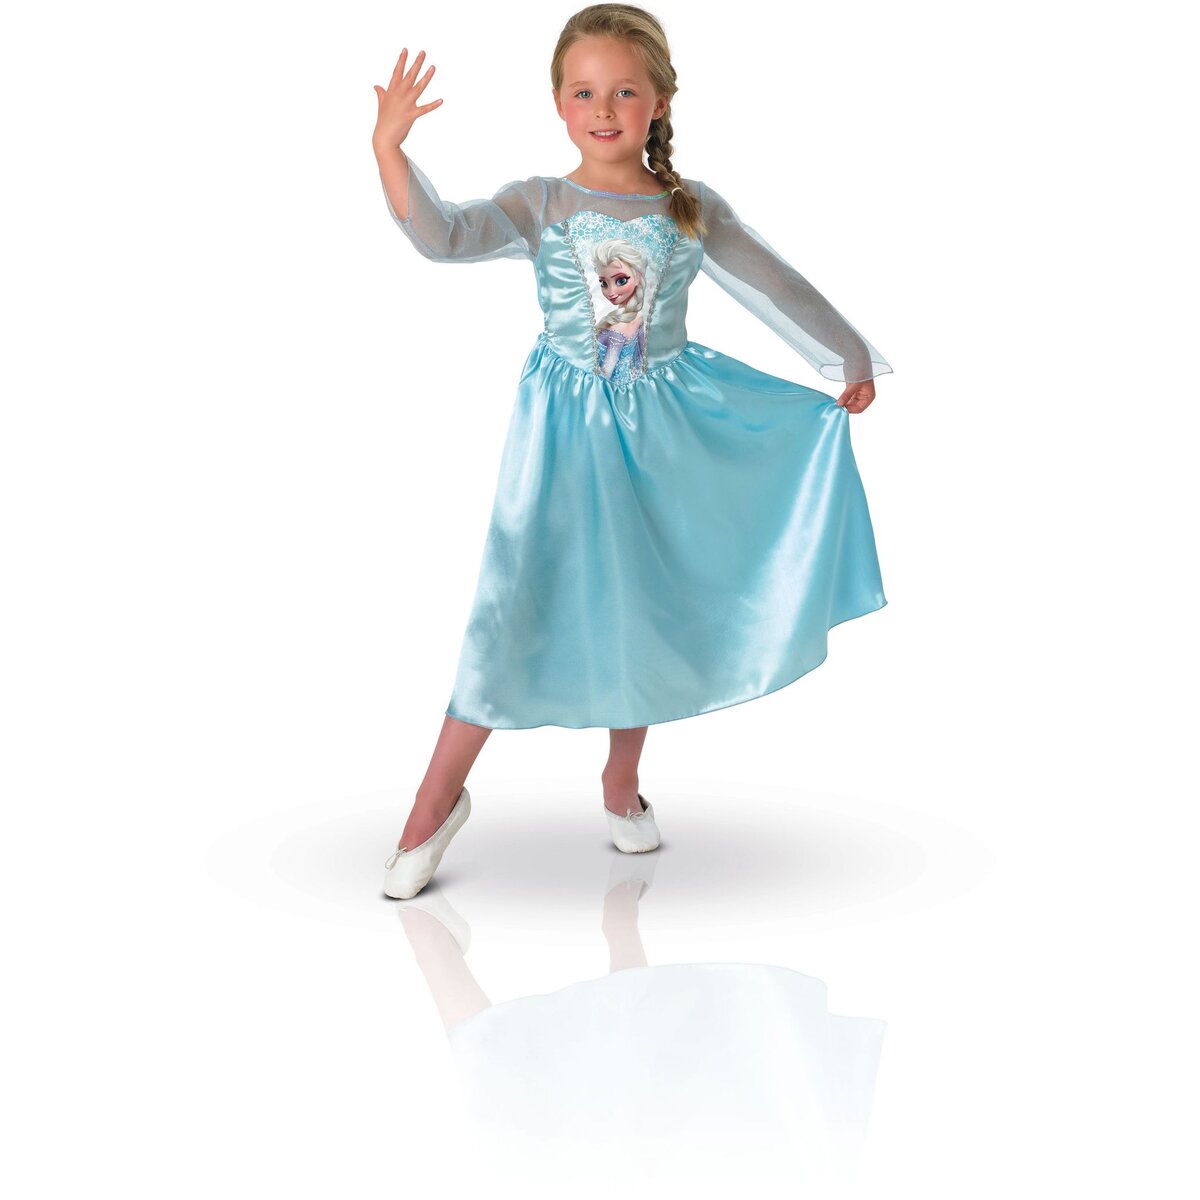 Déguisement Elsa + Accessoires Frozen La Reine des Neiges Disney 5-6 ans